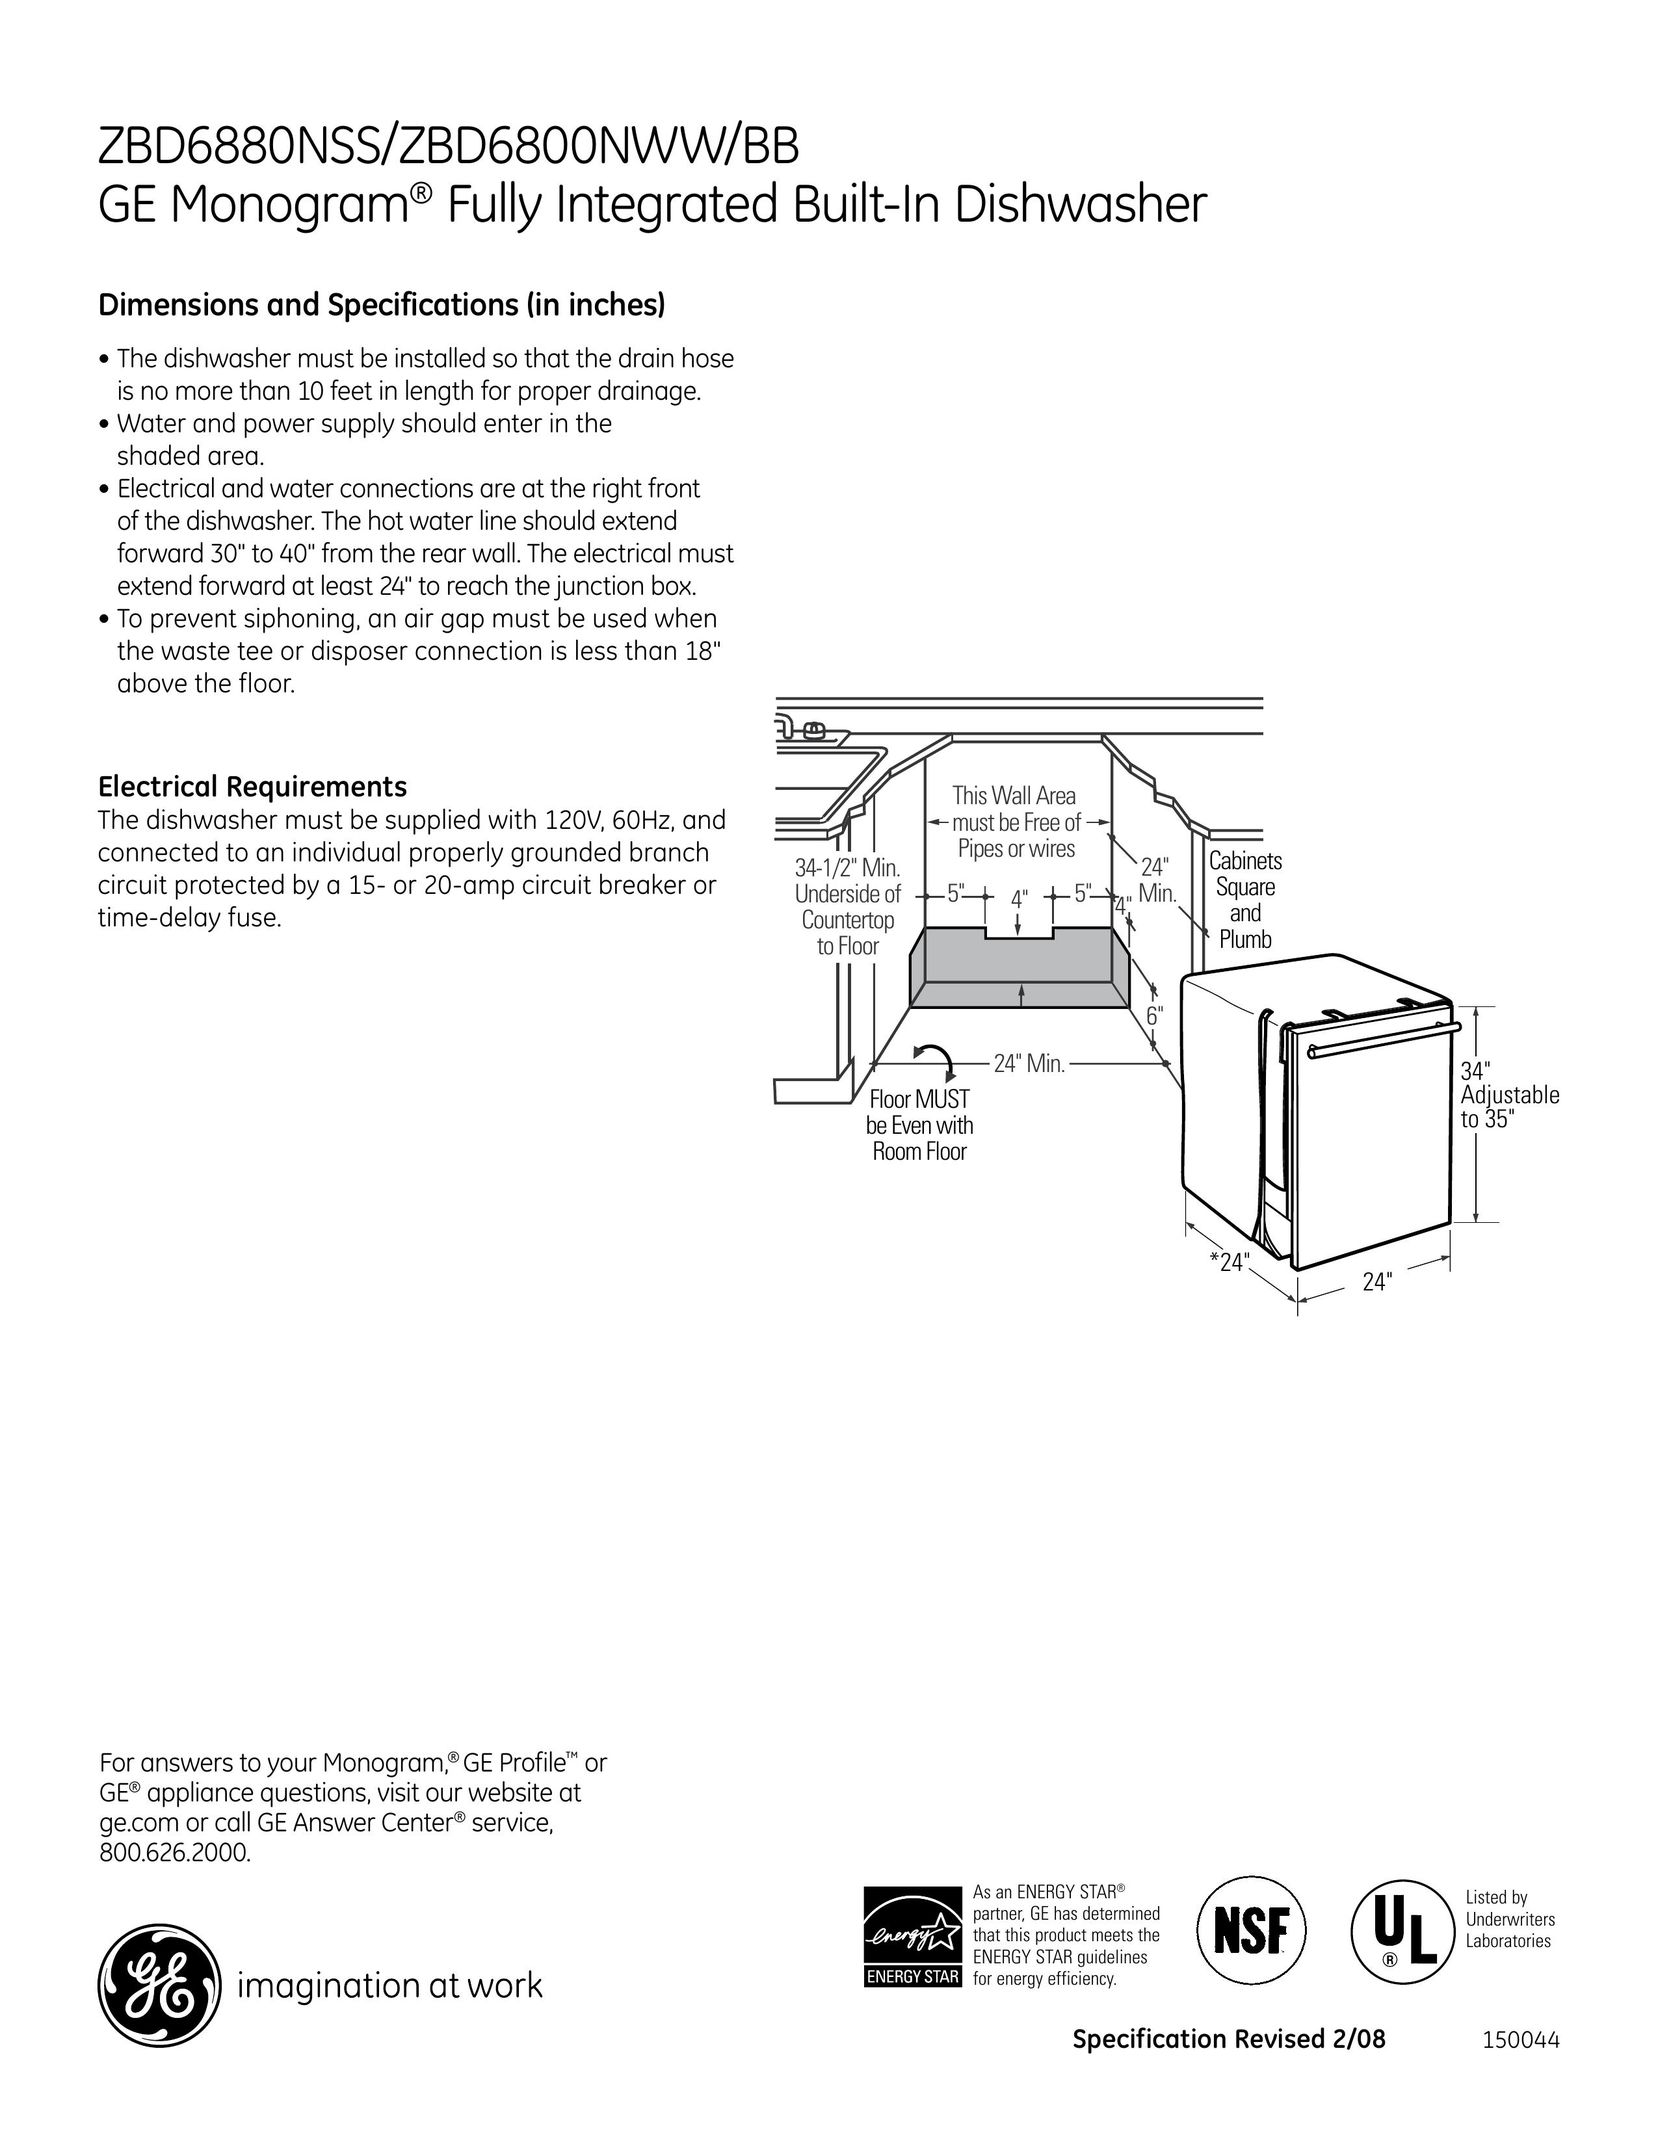 GE Monogram zbd6880NSS Dishwasher User Manual